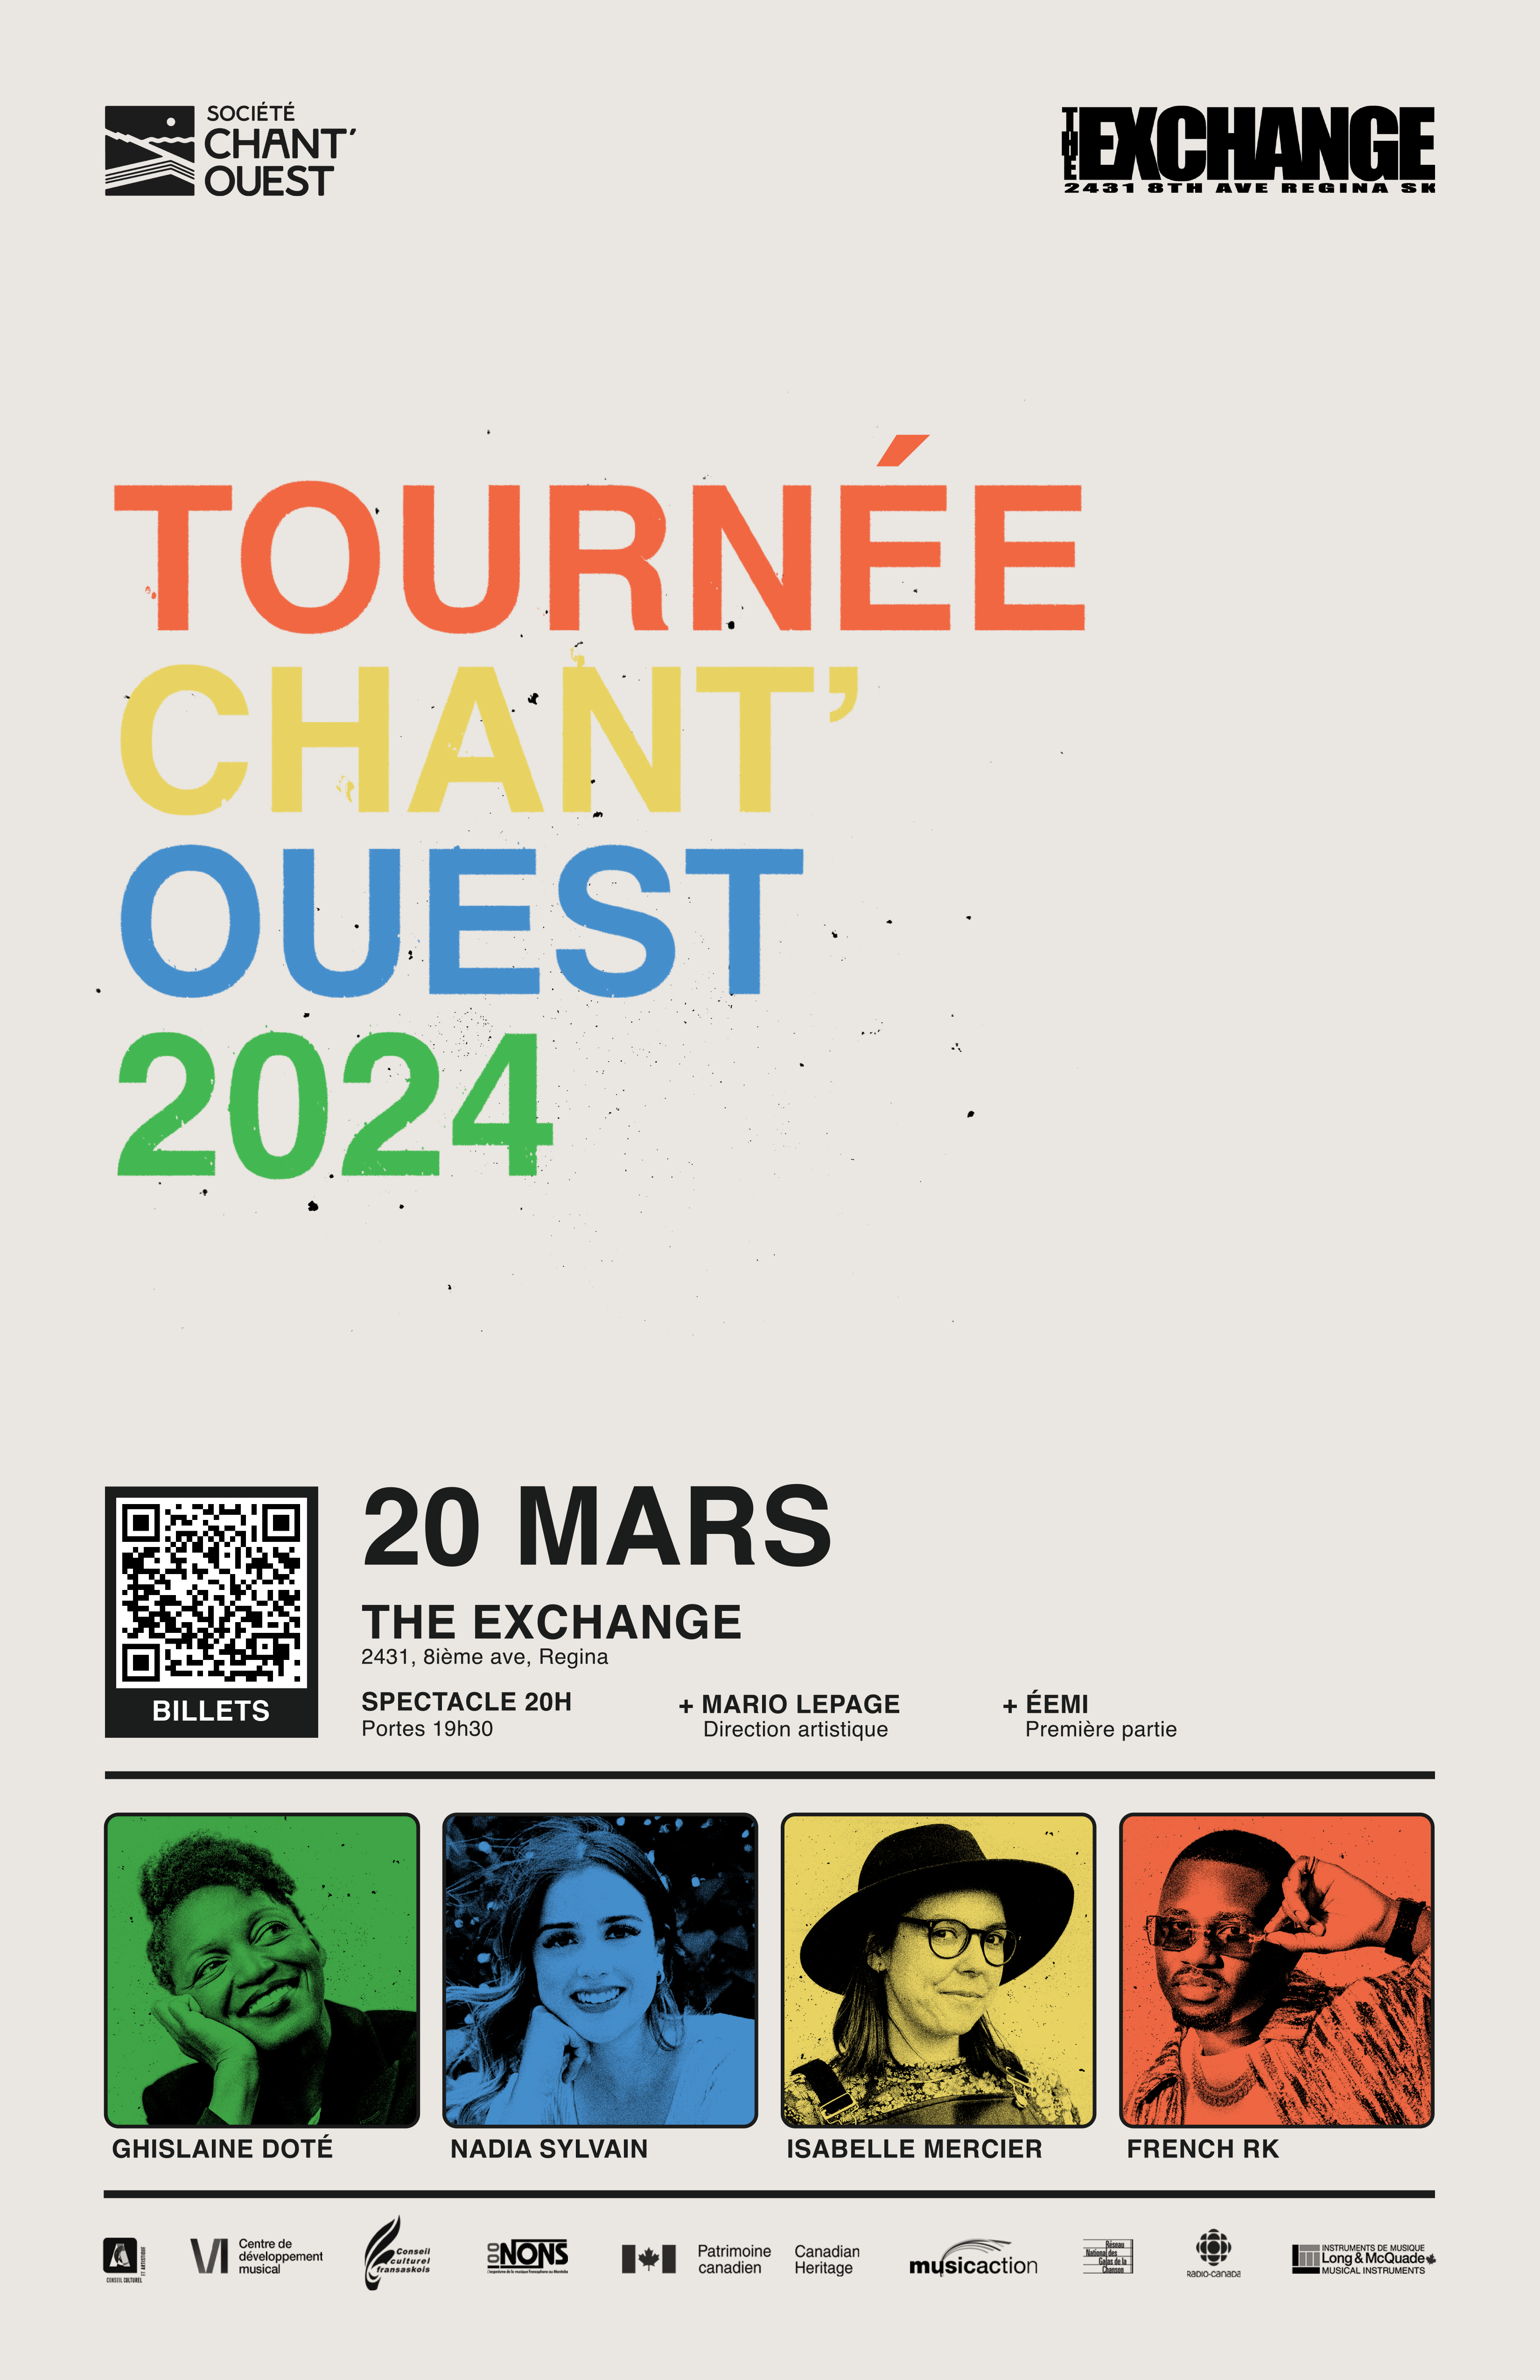 Chant’Ouest 2024 - French Rk, Isabelle Mercier, Nadia Sylvain et Ghislaine Doté. 